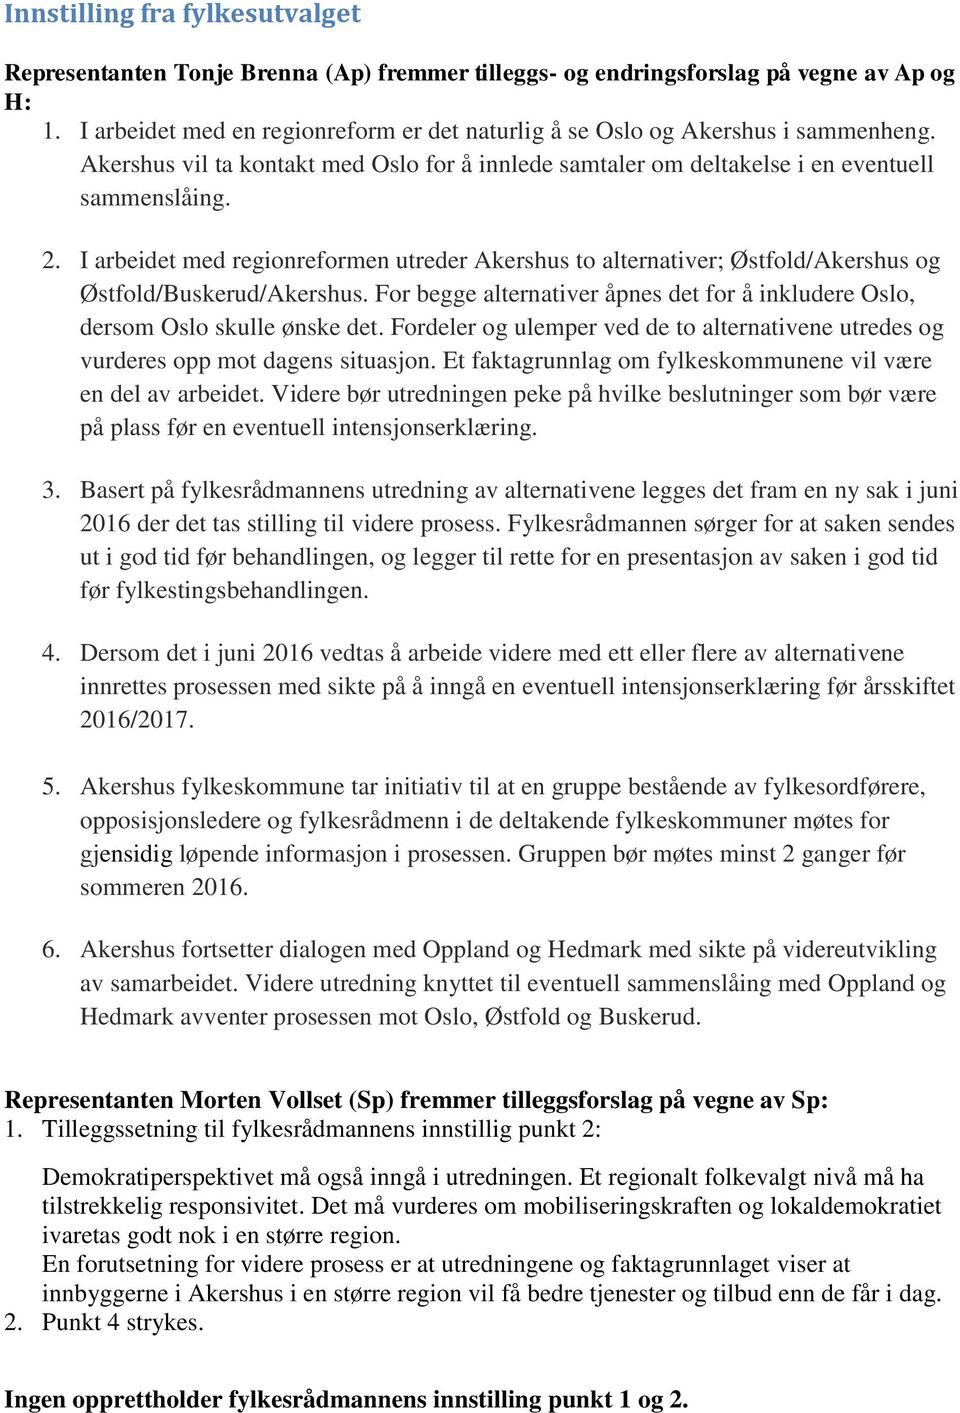 I arbeidet med regionreformen utreder Akershus to alternativer; Østfold/Akershus og Østfold/Buskerud/Akershus. For begge alternativer åpnes det for å inkludere Oslo, dersom Oslo skulle ønske det.